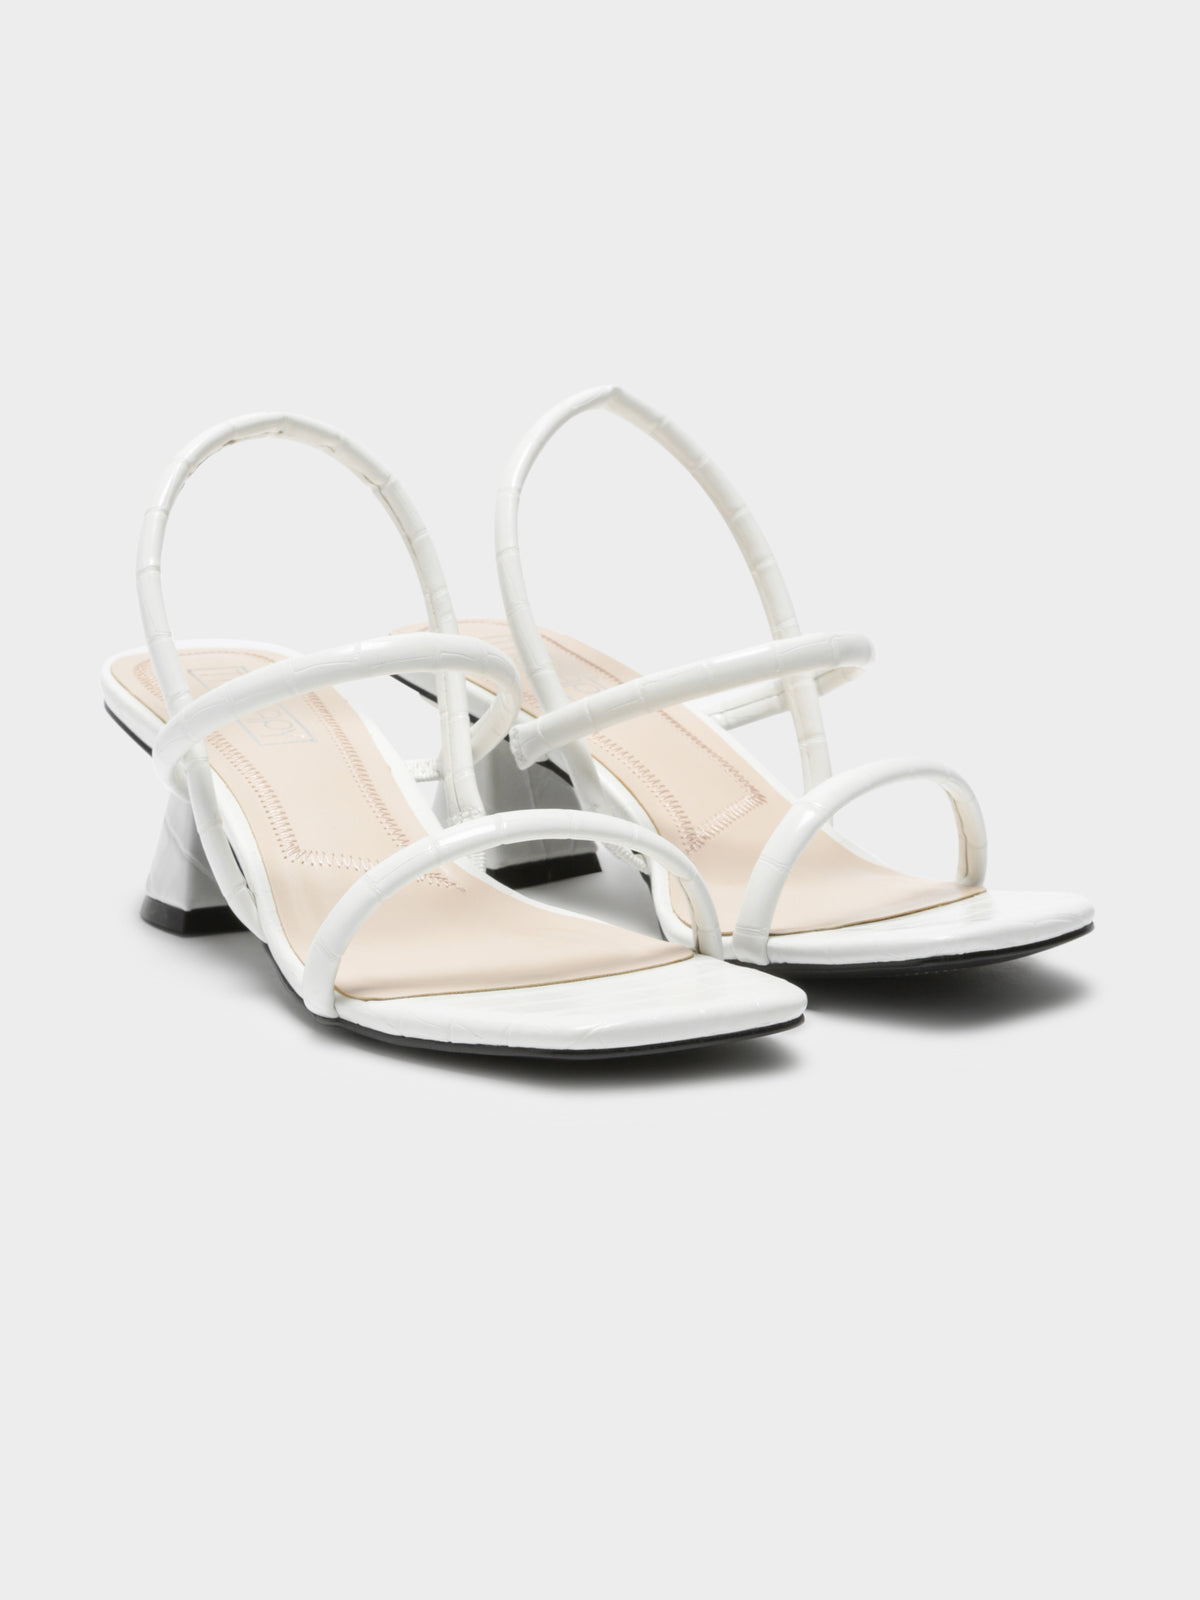 Betta Heels in White Croc